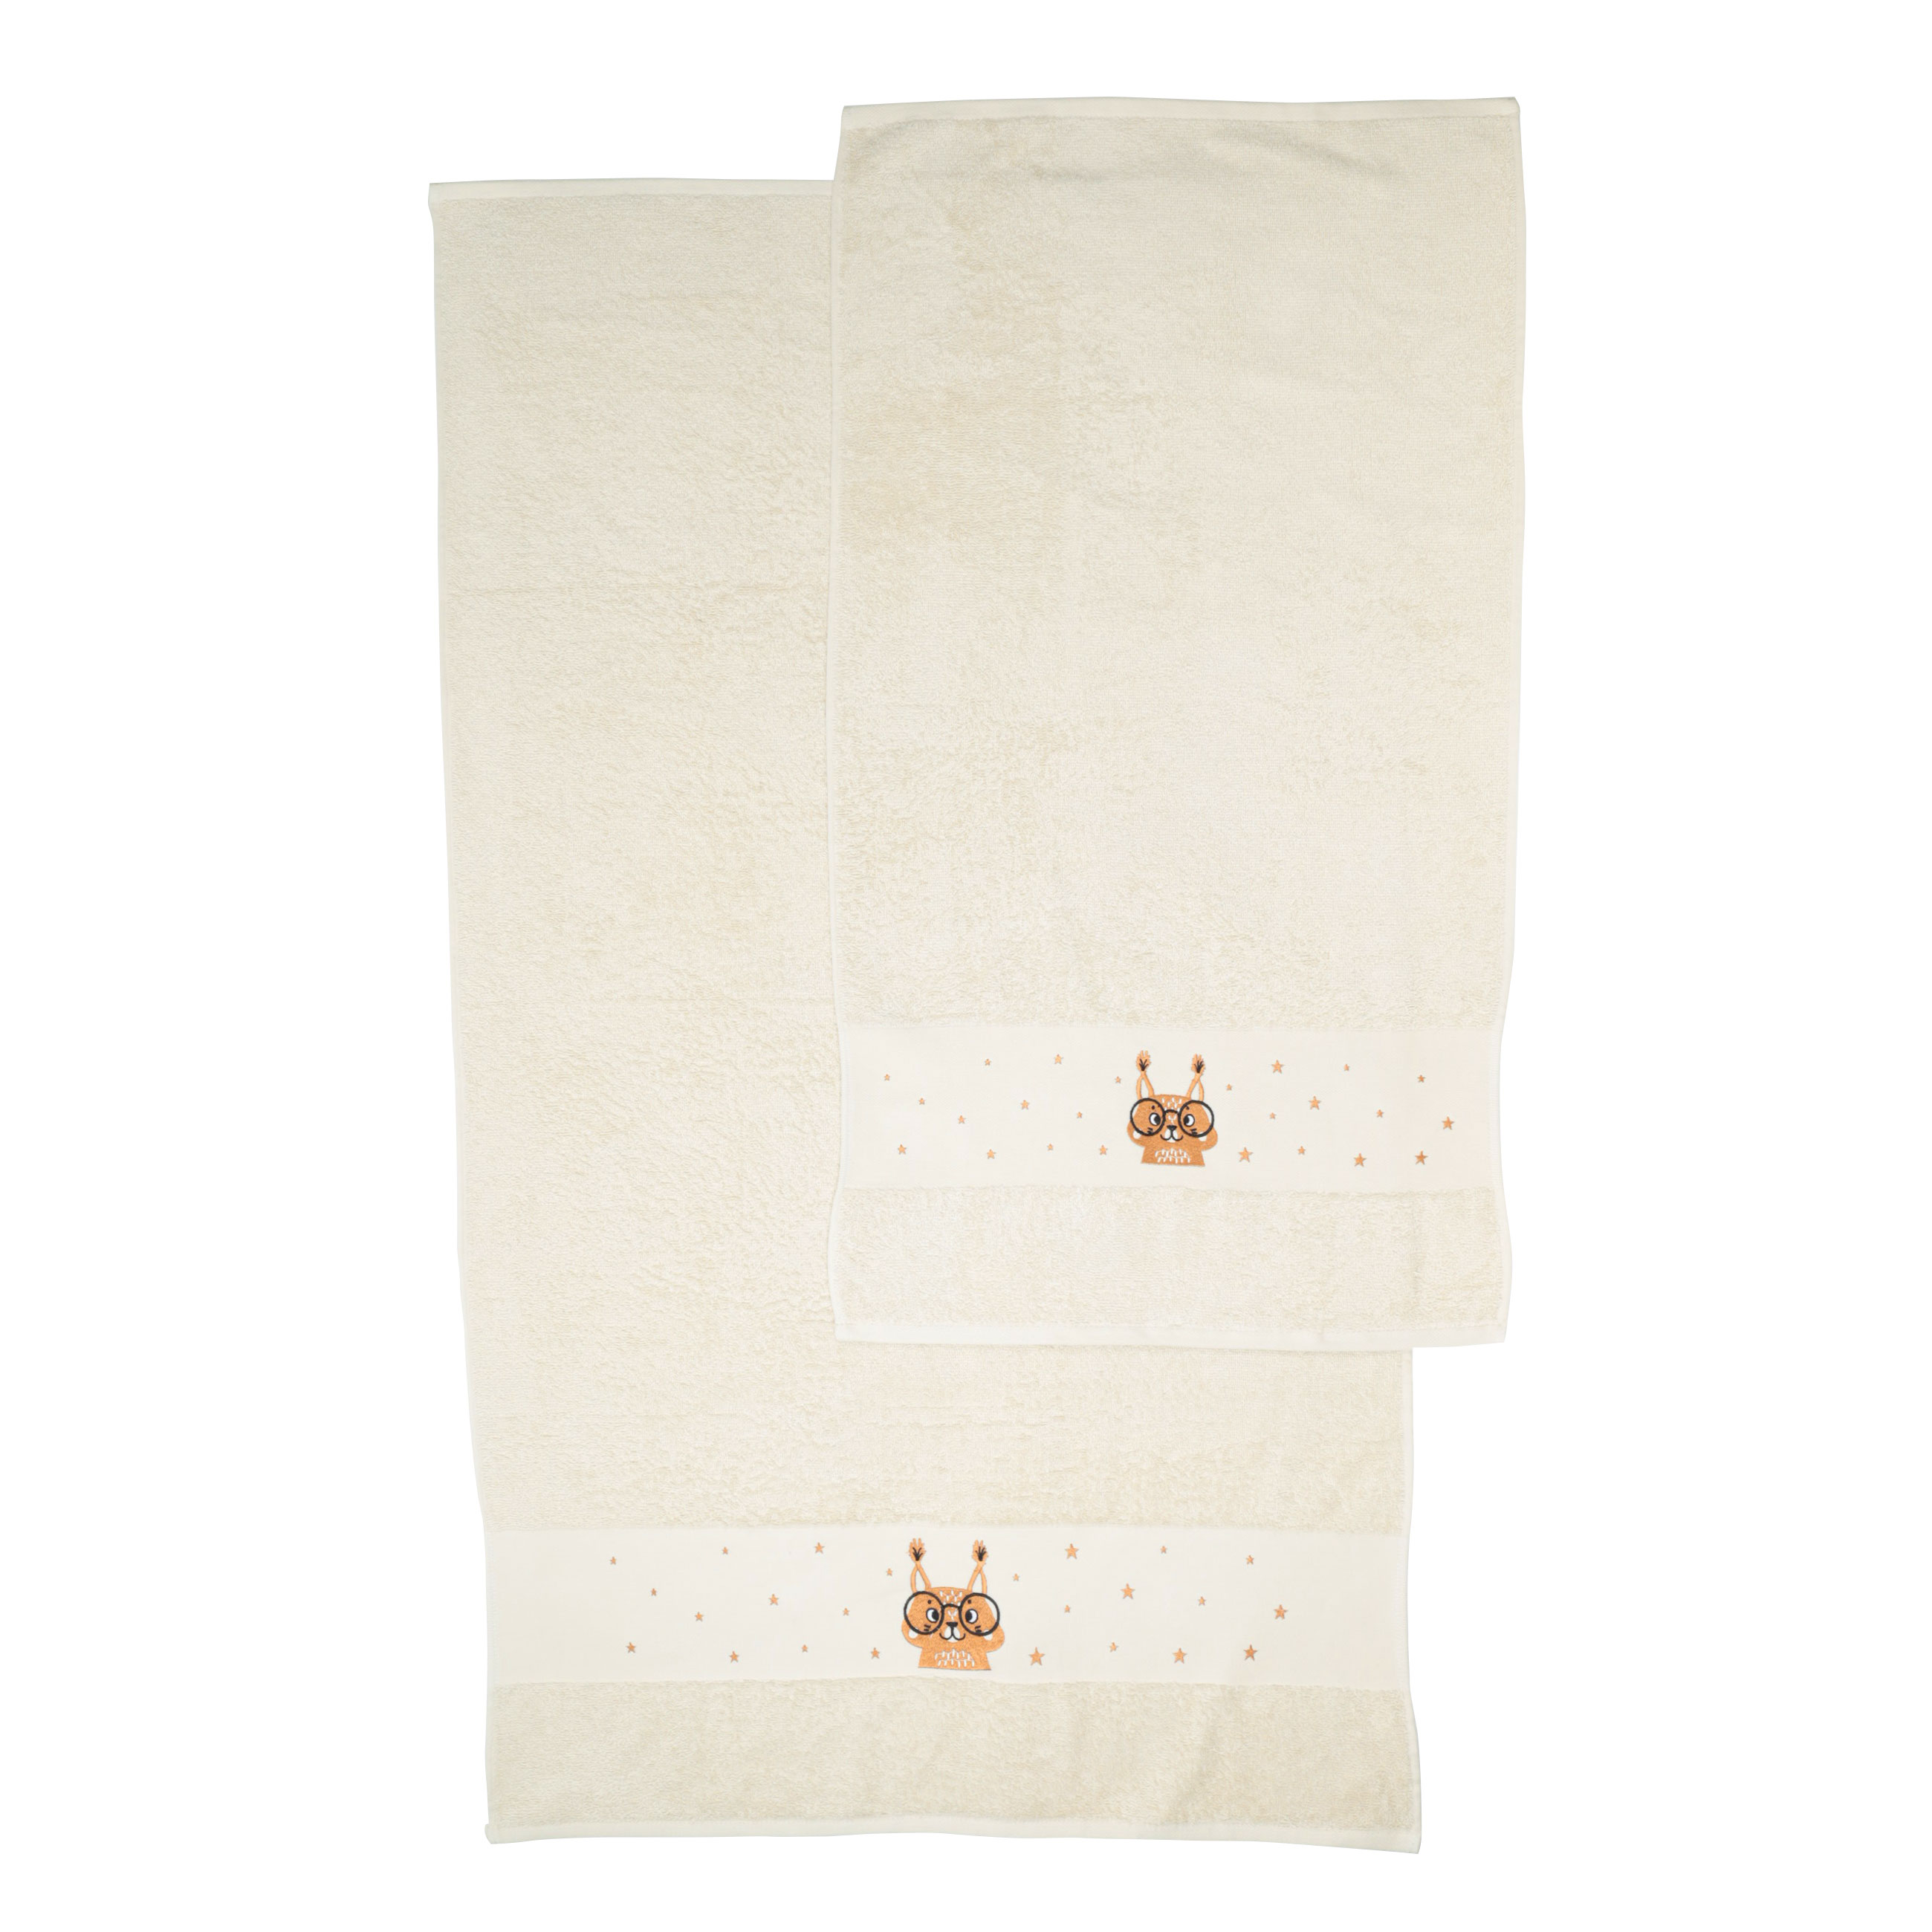 Children's towel, 70x120 cm, cotton, beige, Squirrel, Forest Animals изображение № 3